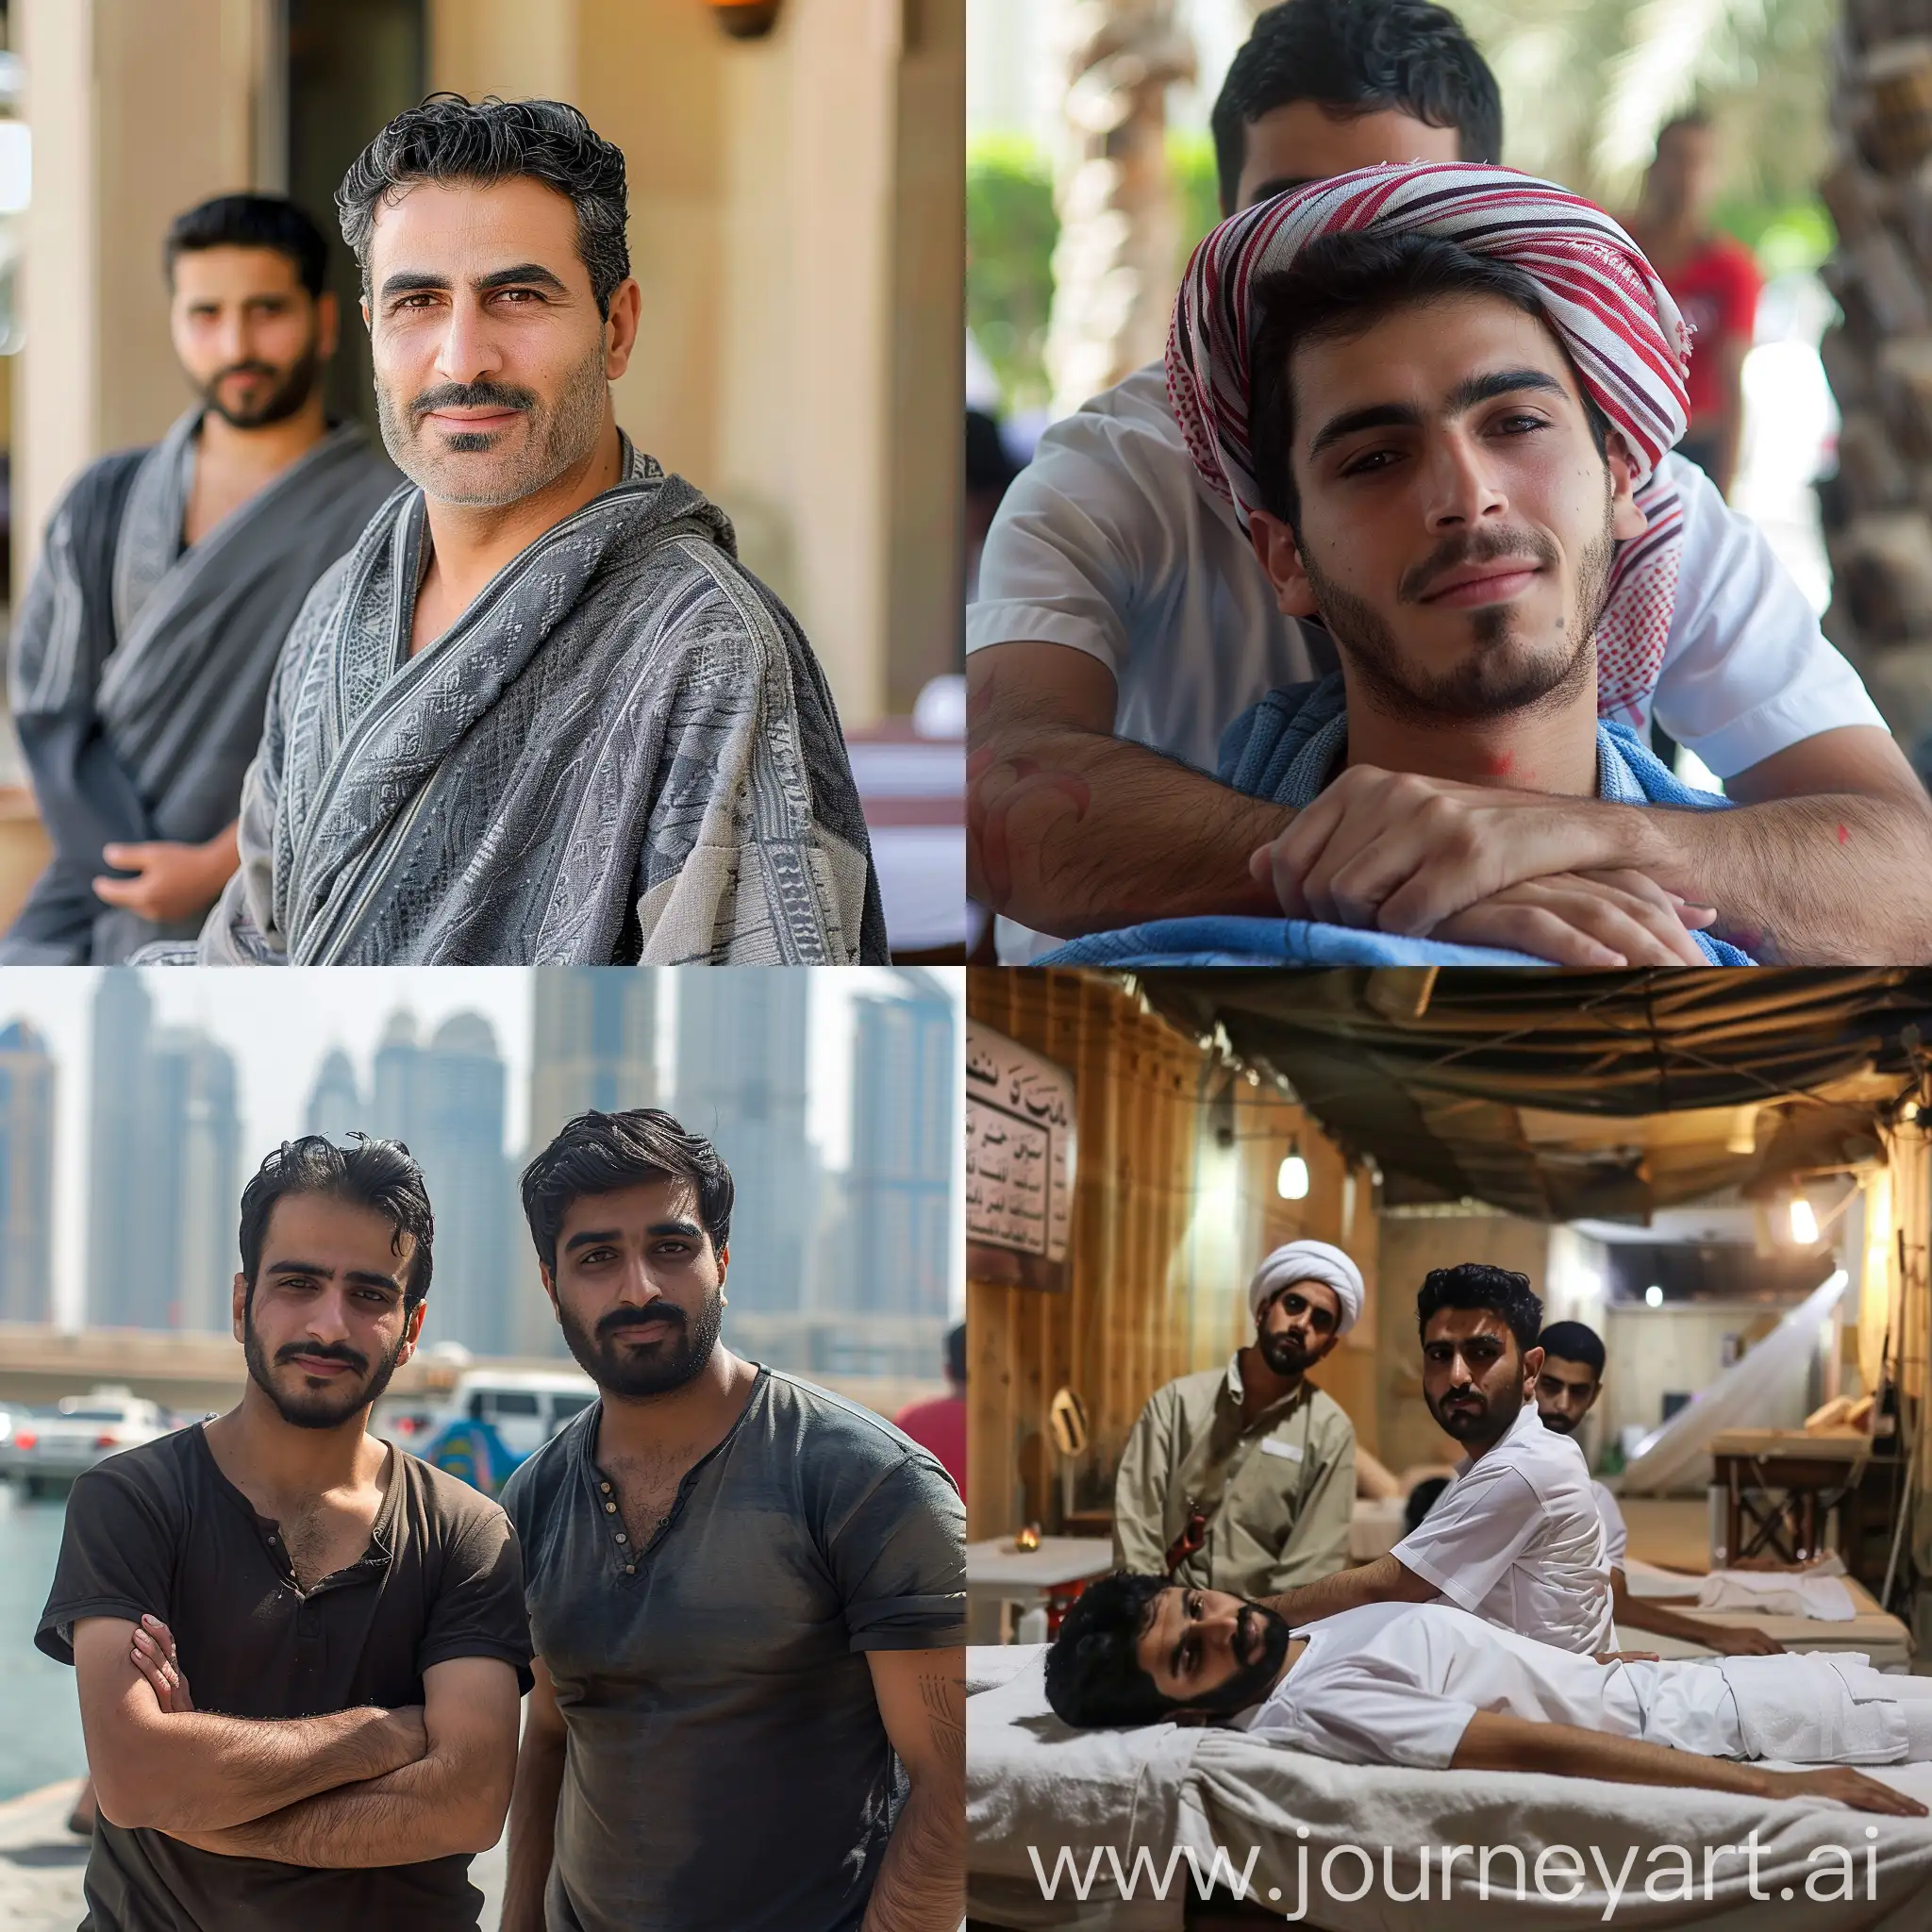 Иранские парни работают массажистами в Дубае